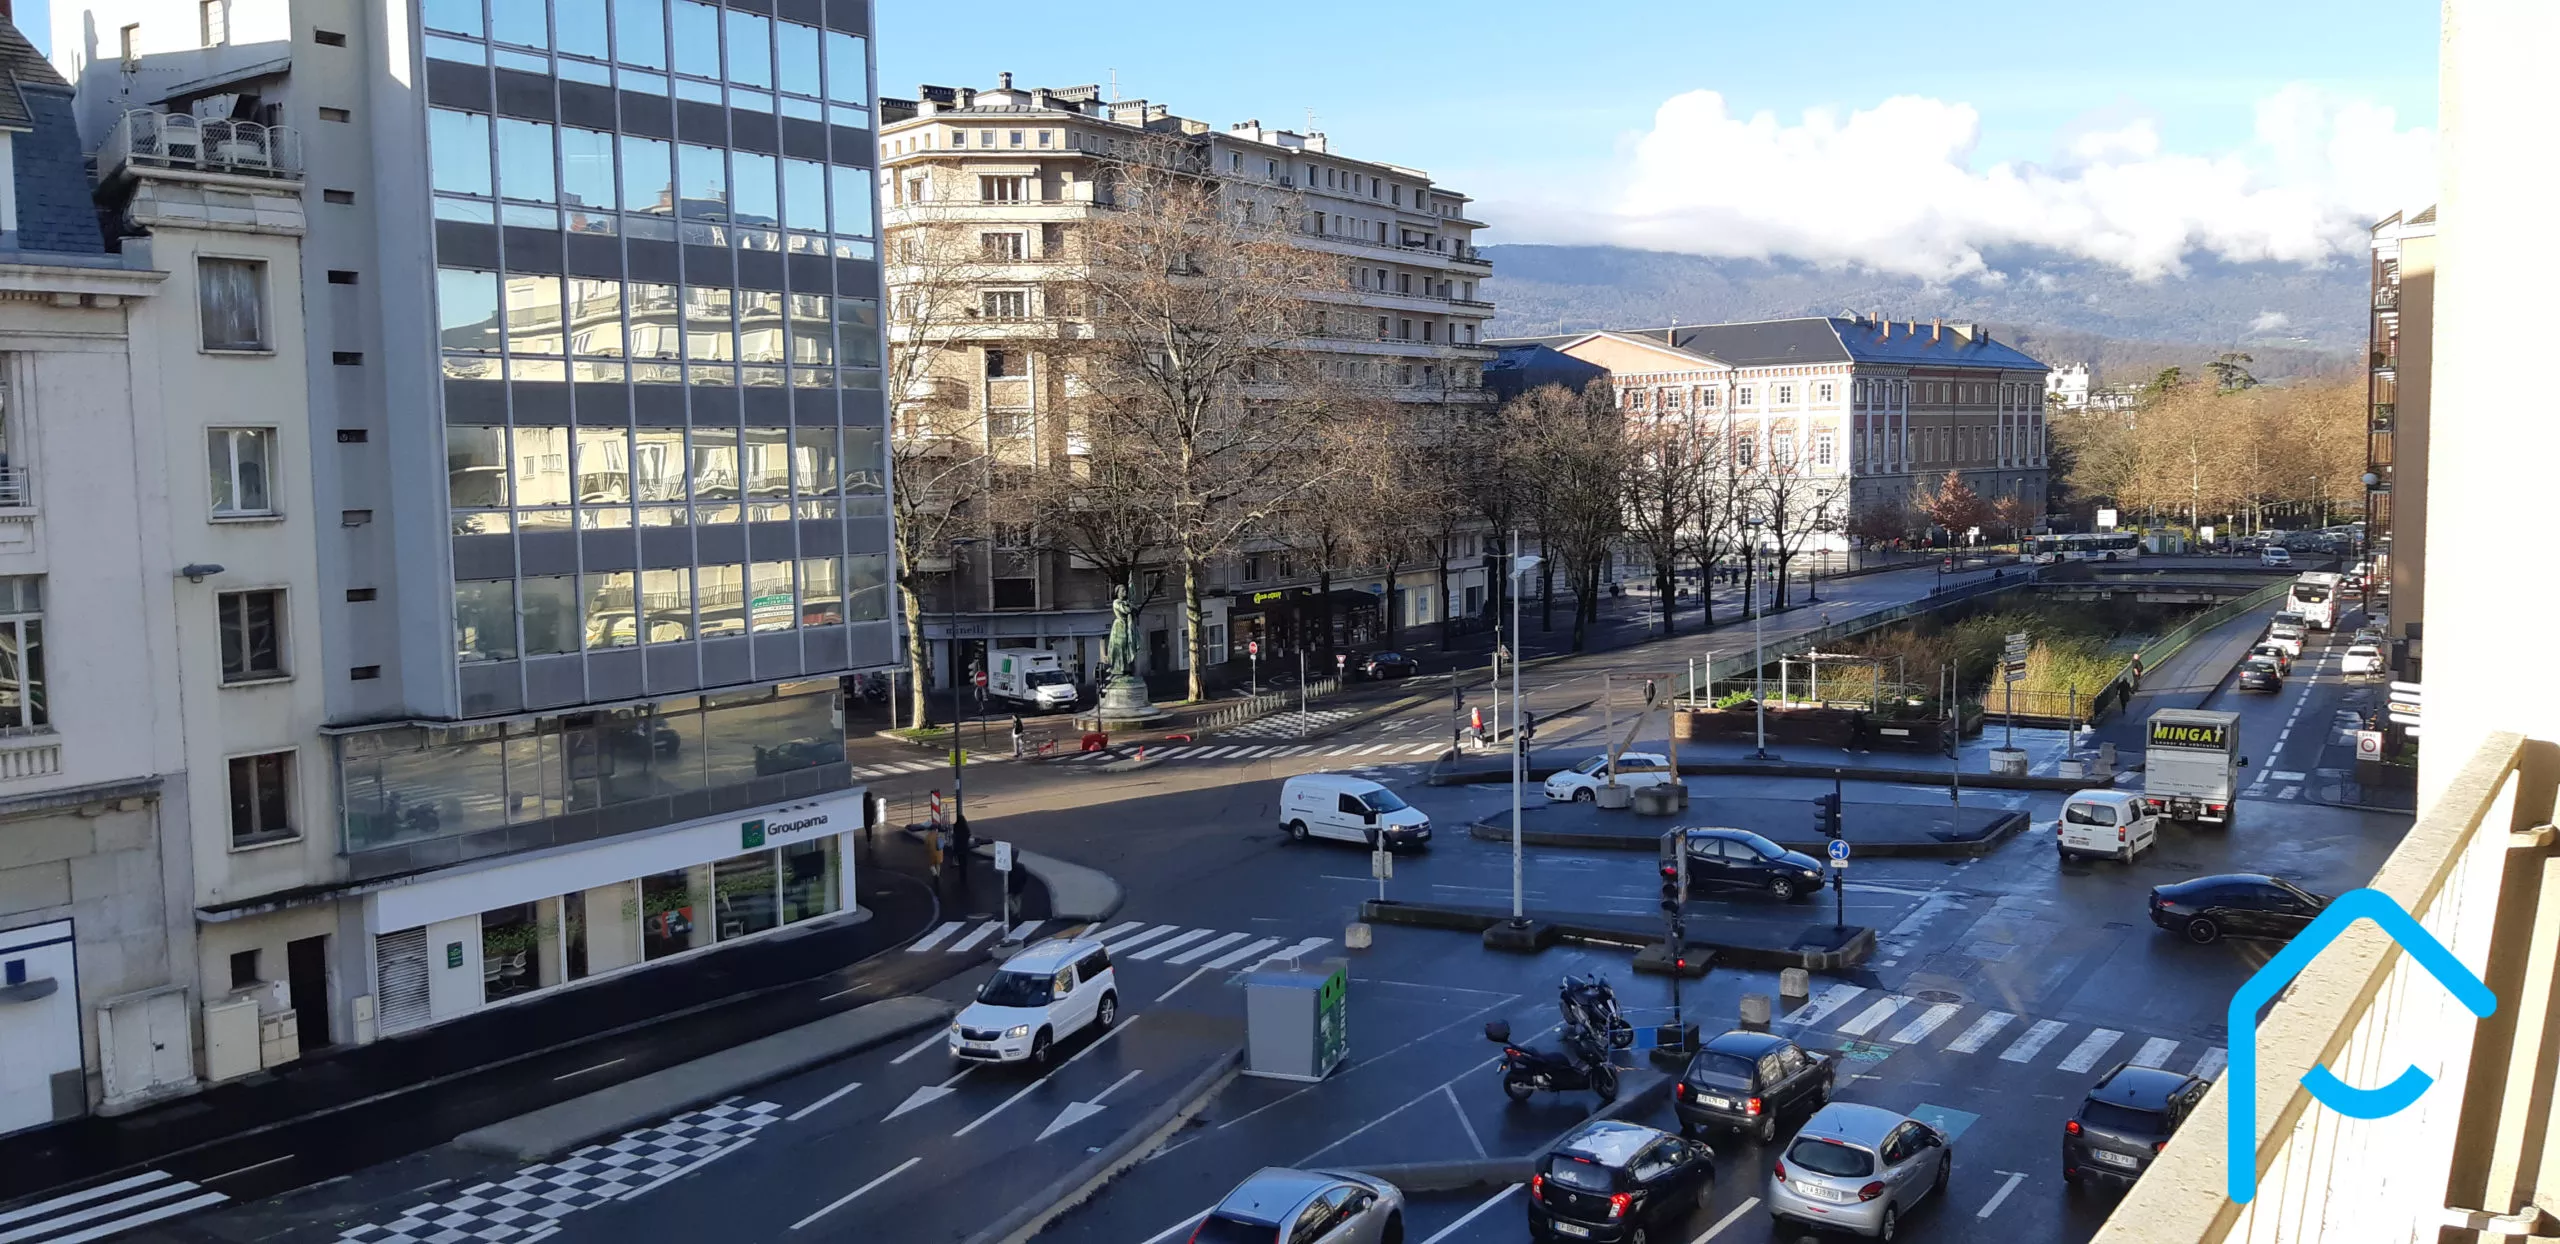 A vendre appartement Chambéry Savoie T3 avec cave lumineux vue 1